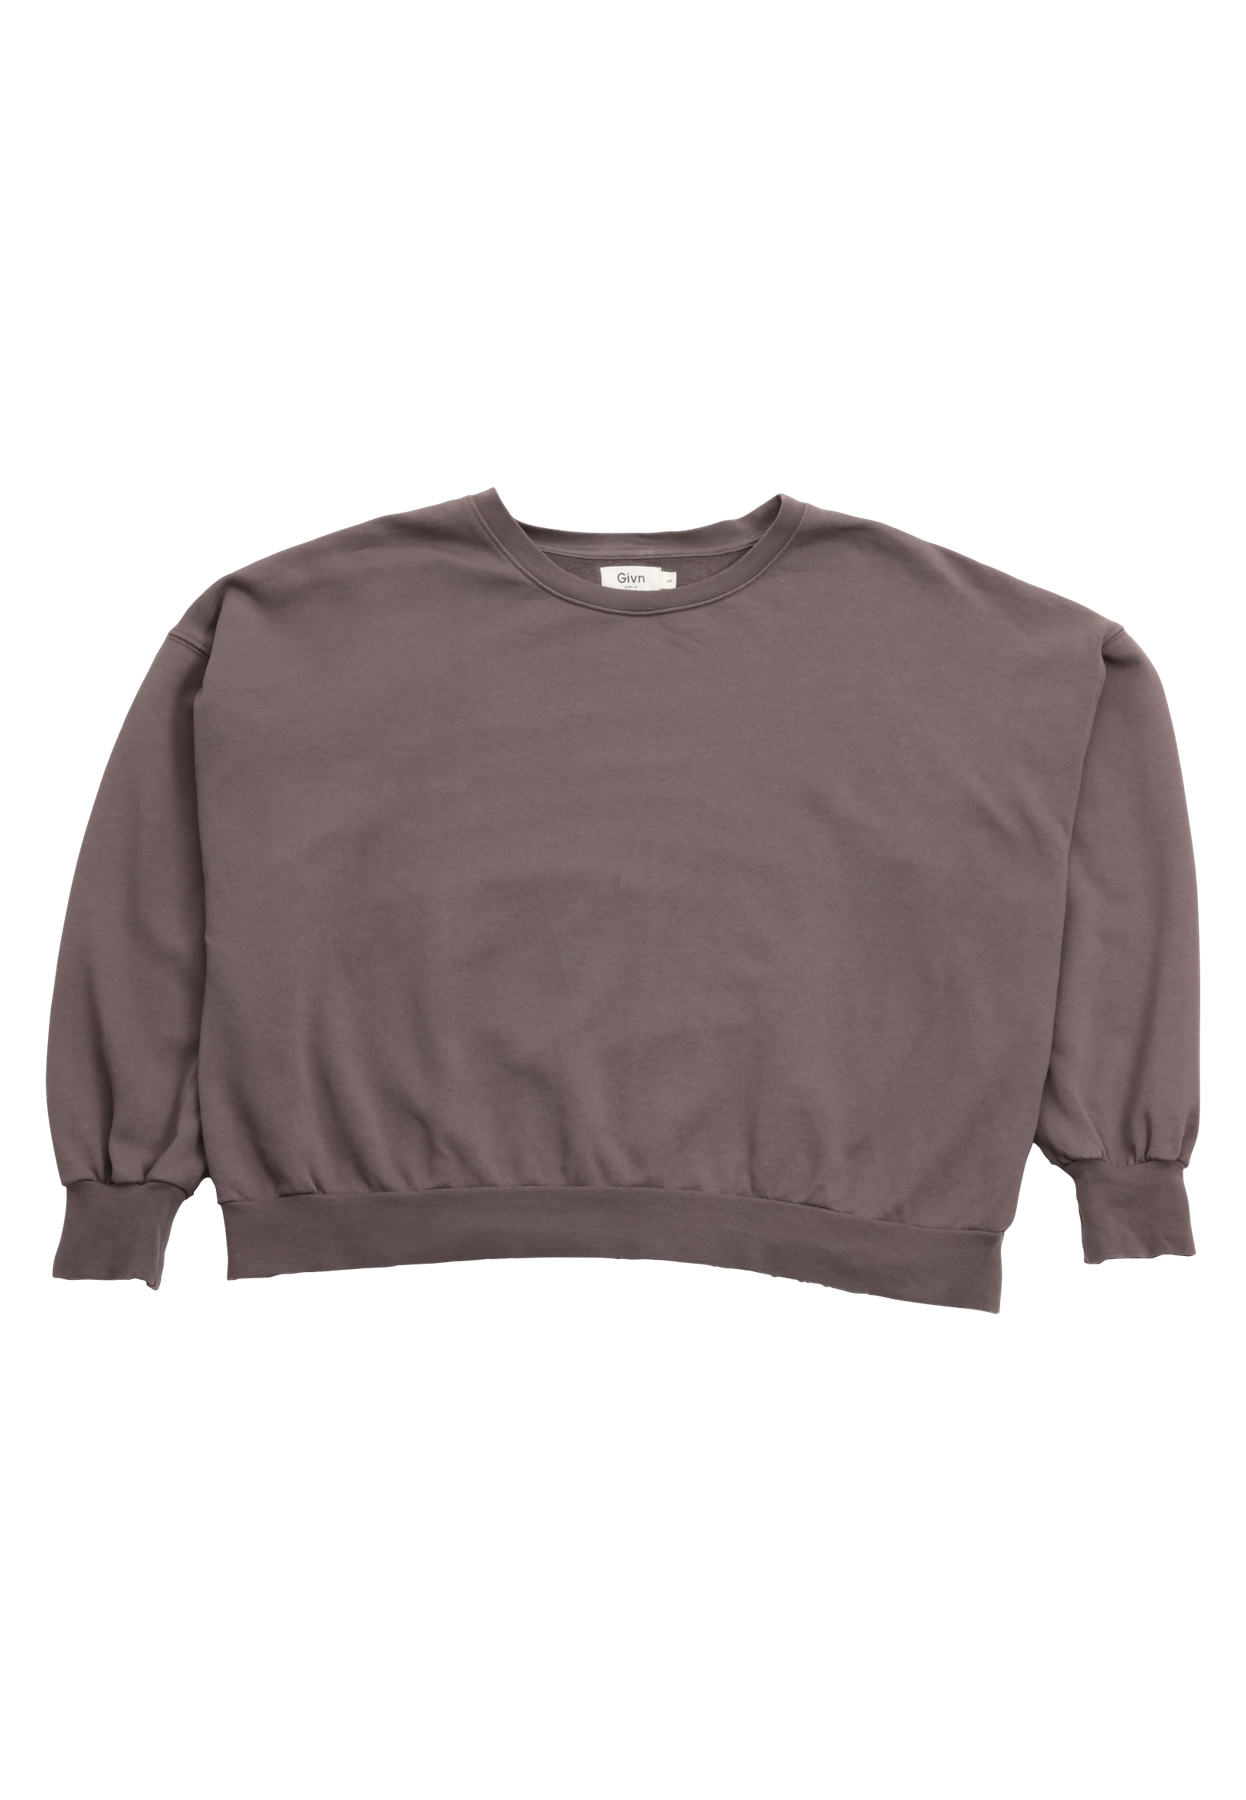 Preloved Sweater ARIANA aus Bio-Baumwolle  - Taupe - S